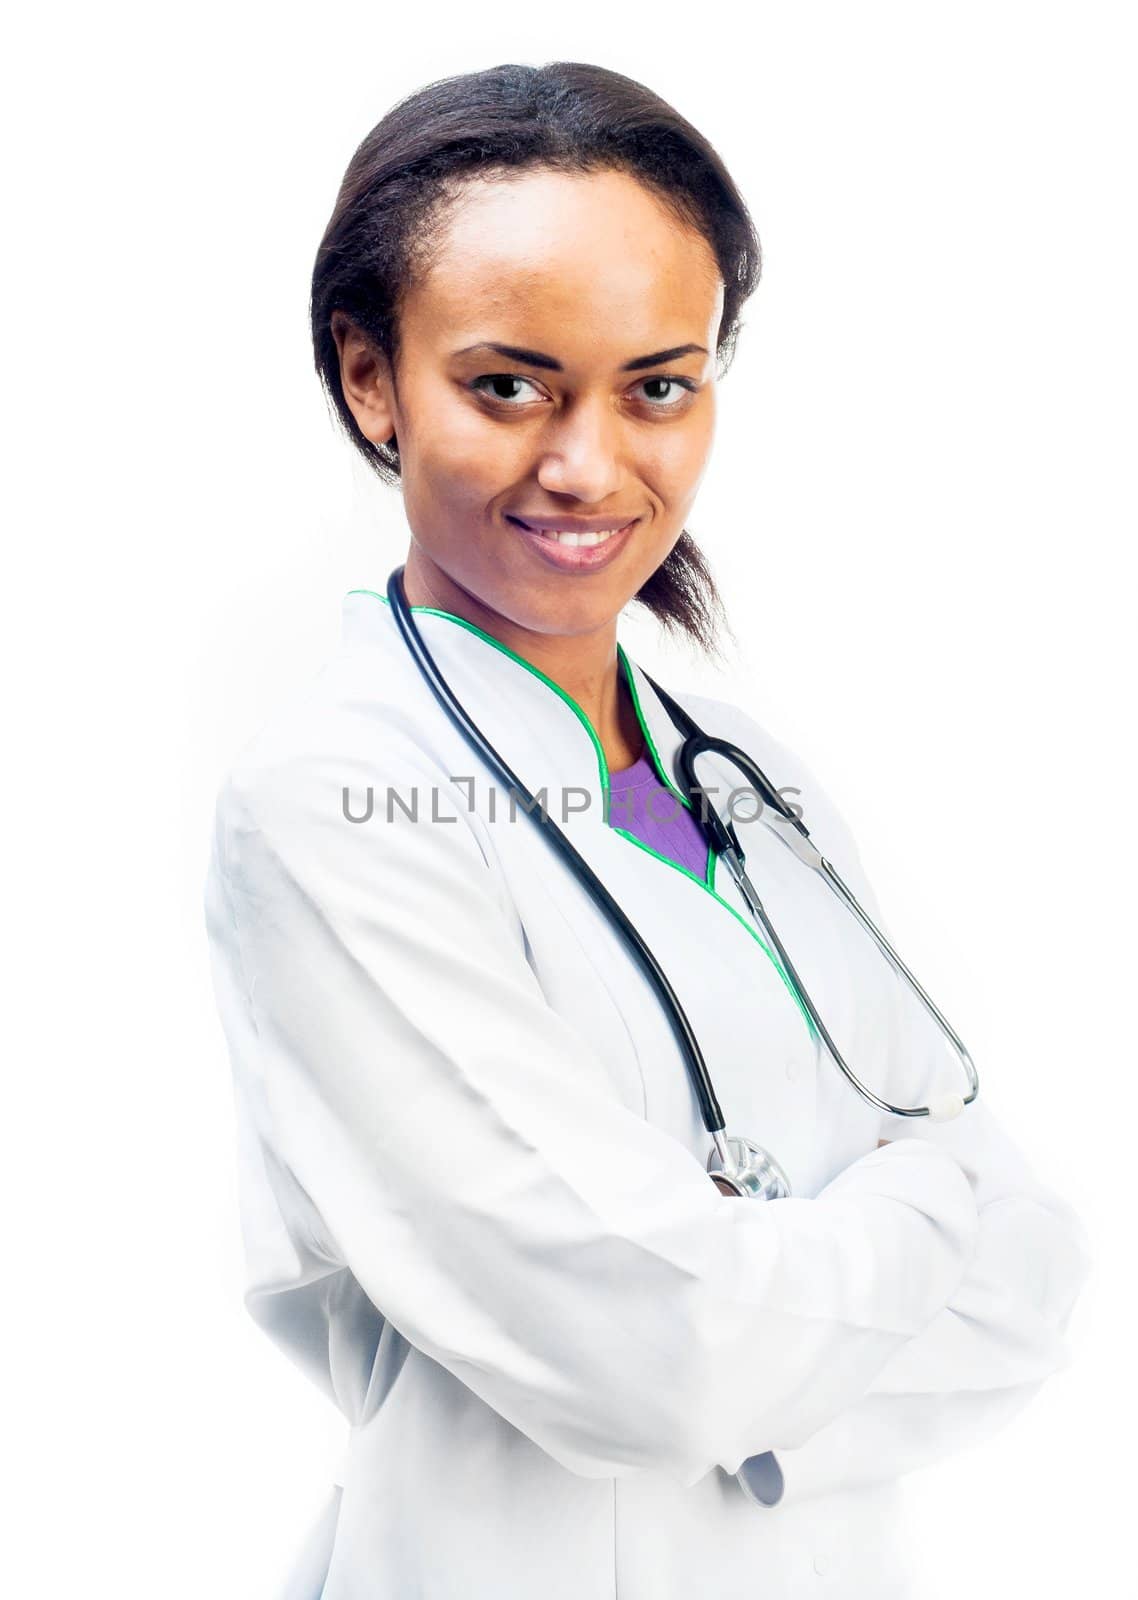 Female Doctor by GekaSkr